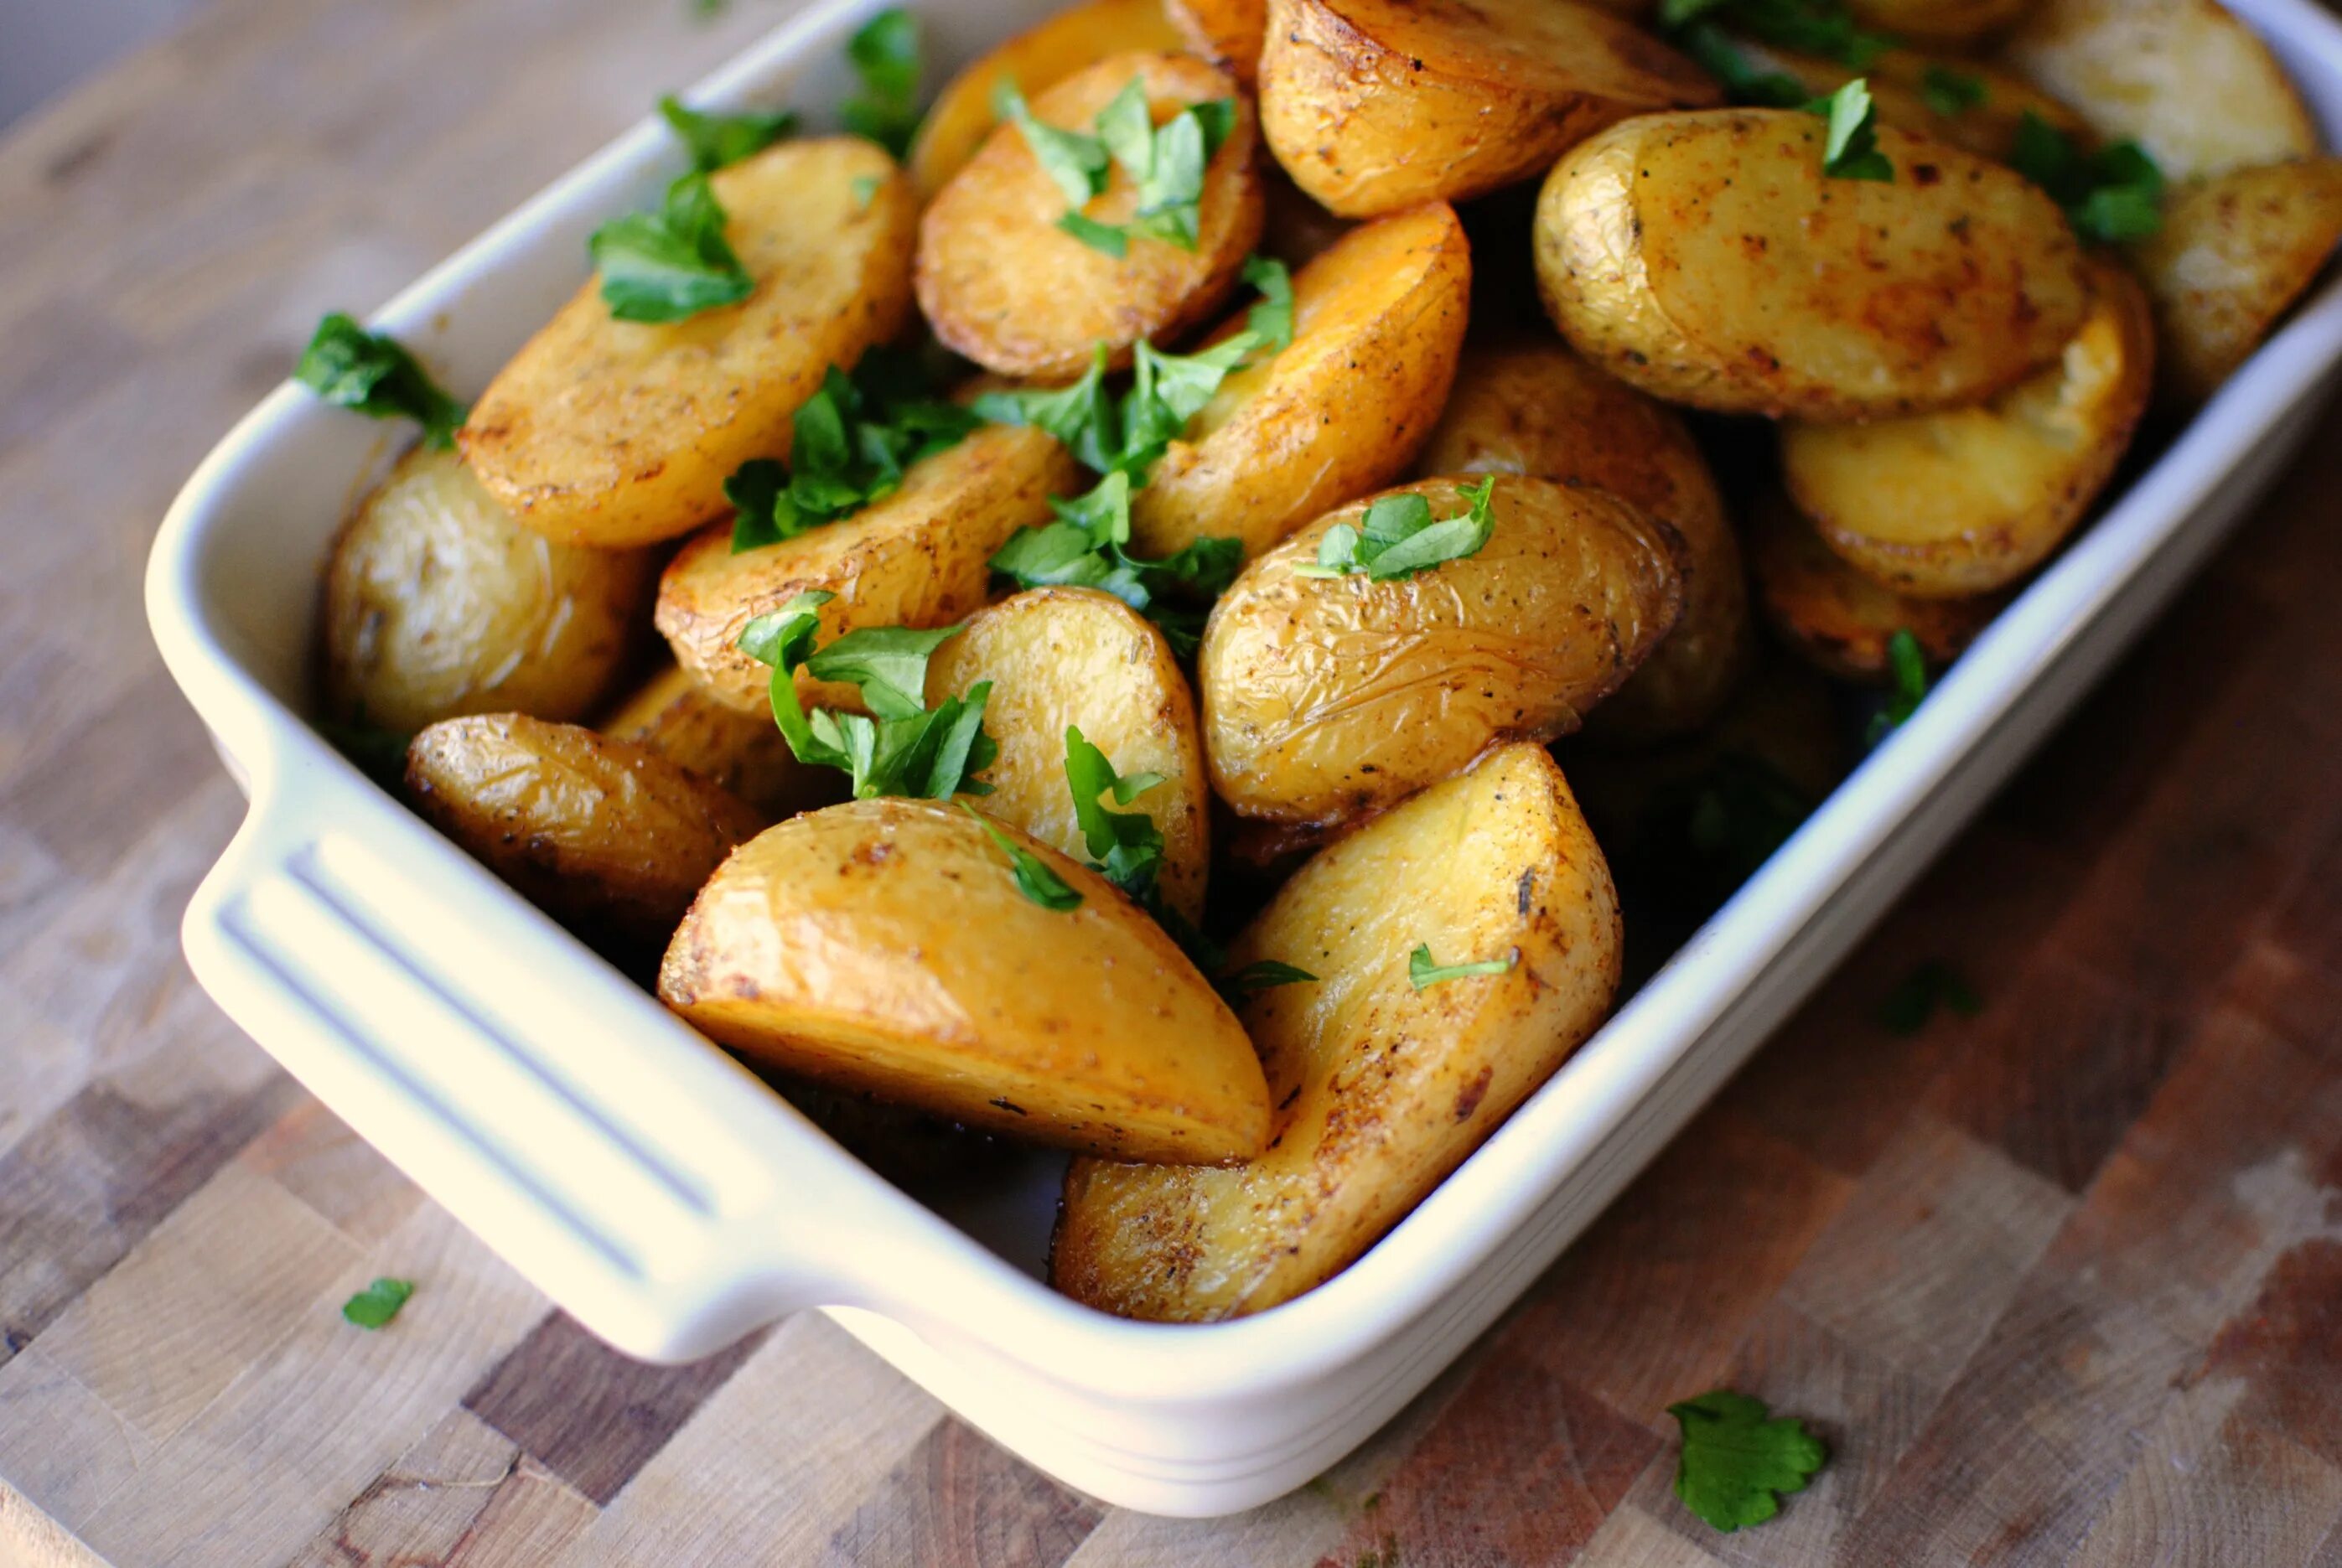 Просто запеченная картошка. Запеченный картофель. Печеный картофель. Картофель по-деревенски в духовке. Молодеч картошка в духовке.